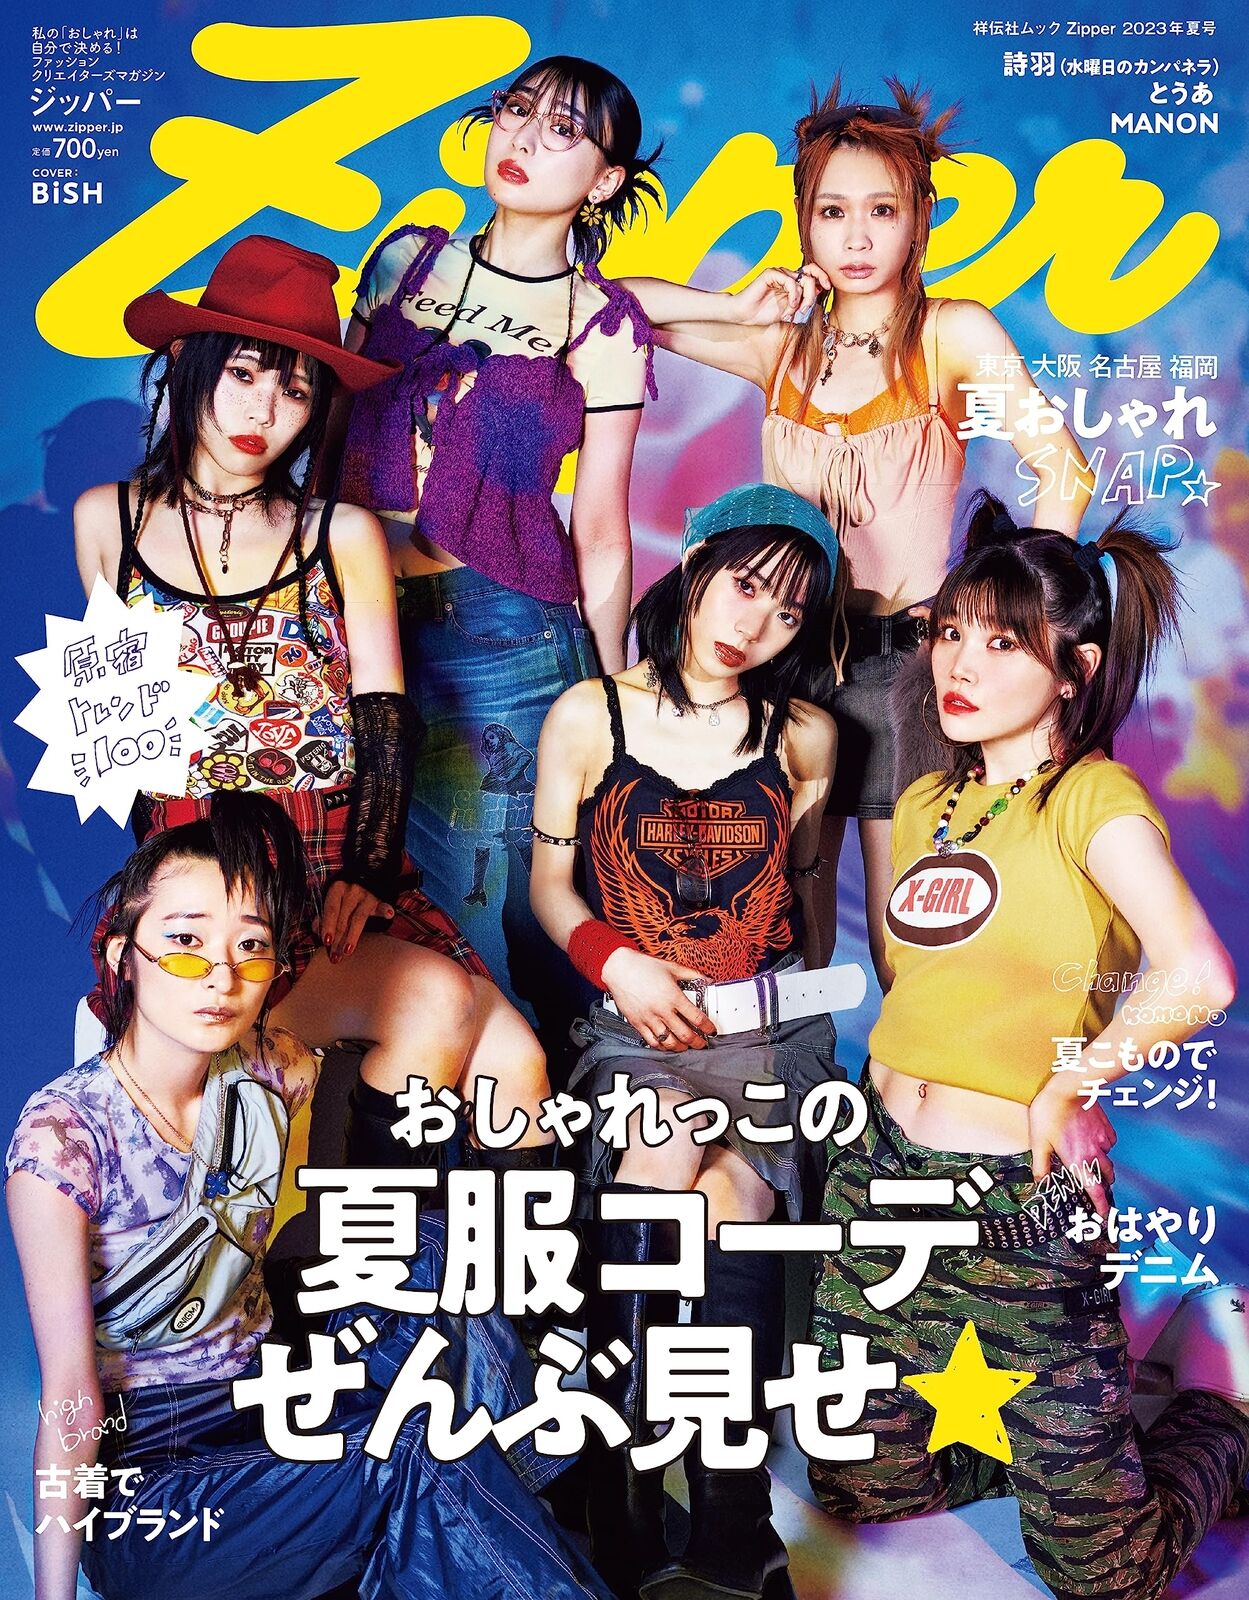 Zipper 2023 SUMMER ISSUE Street Snap Japan Women Girls Fashion Magazine BiSH New